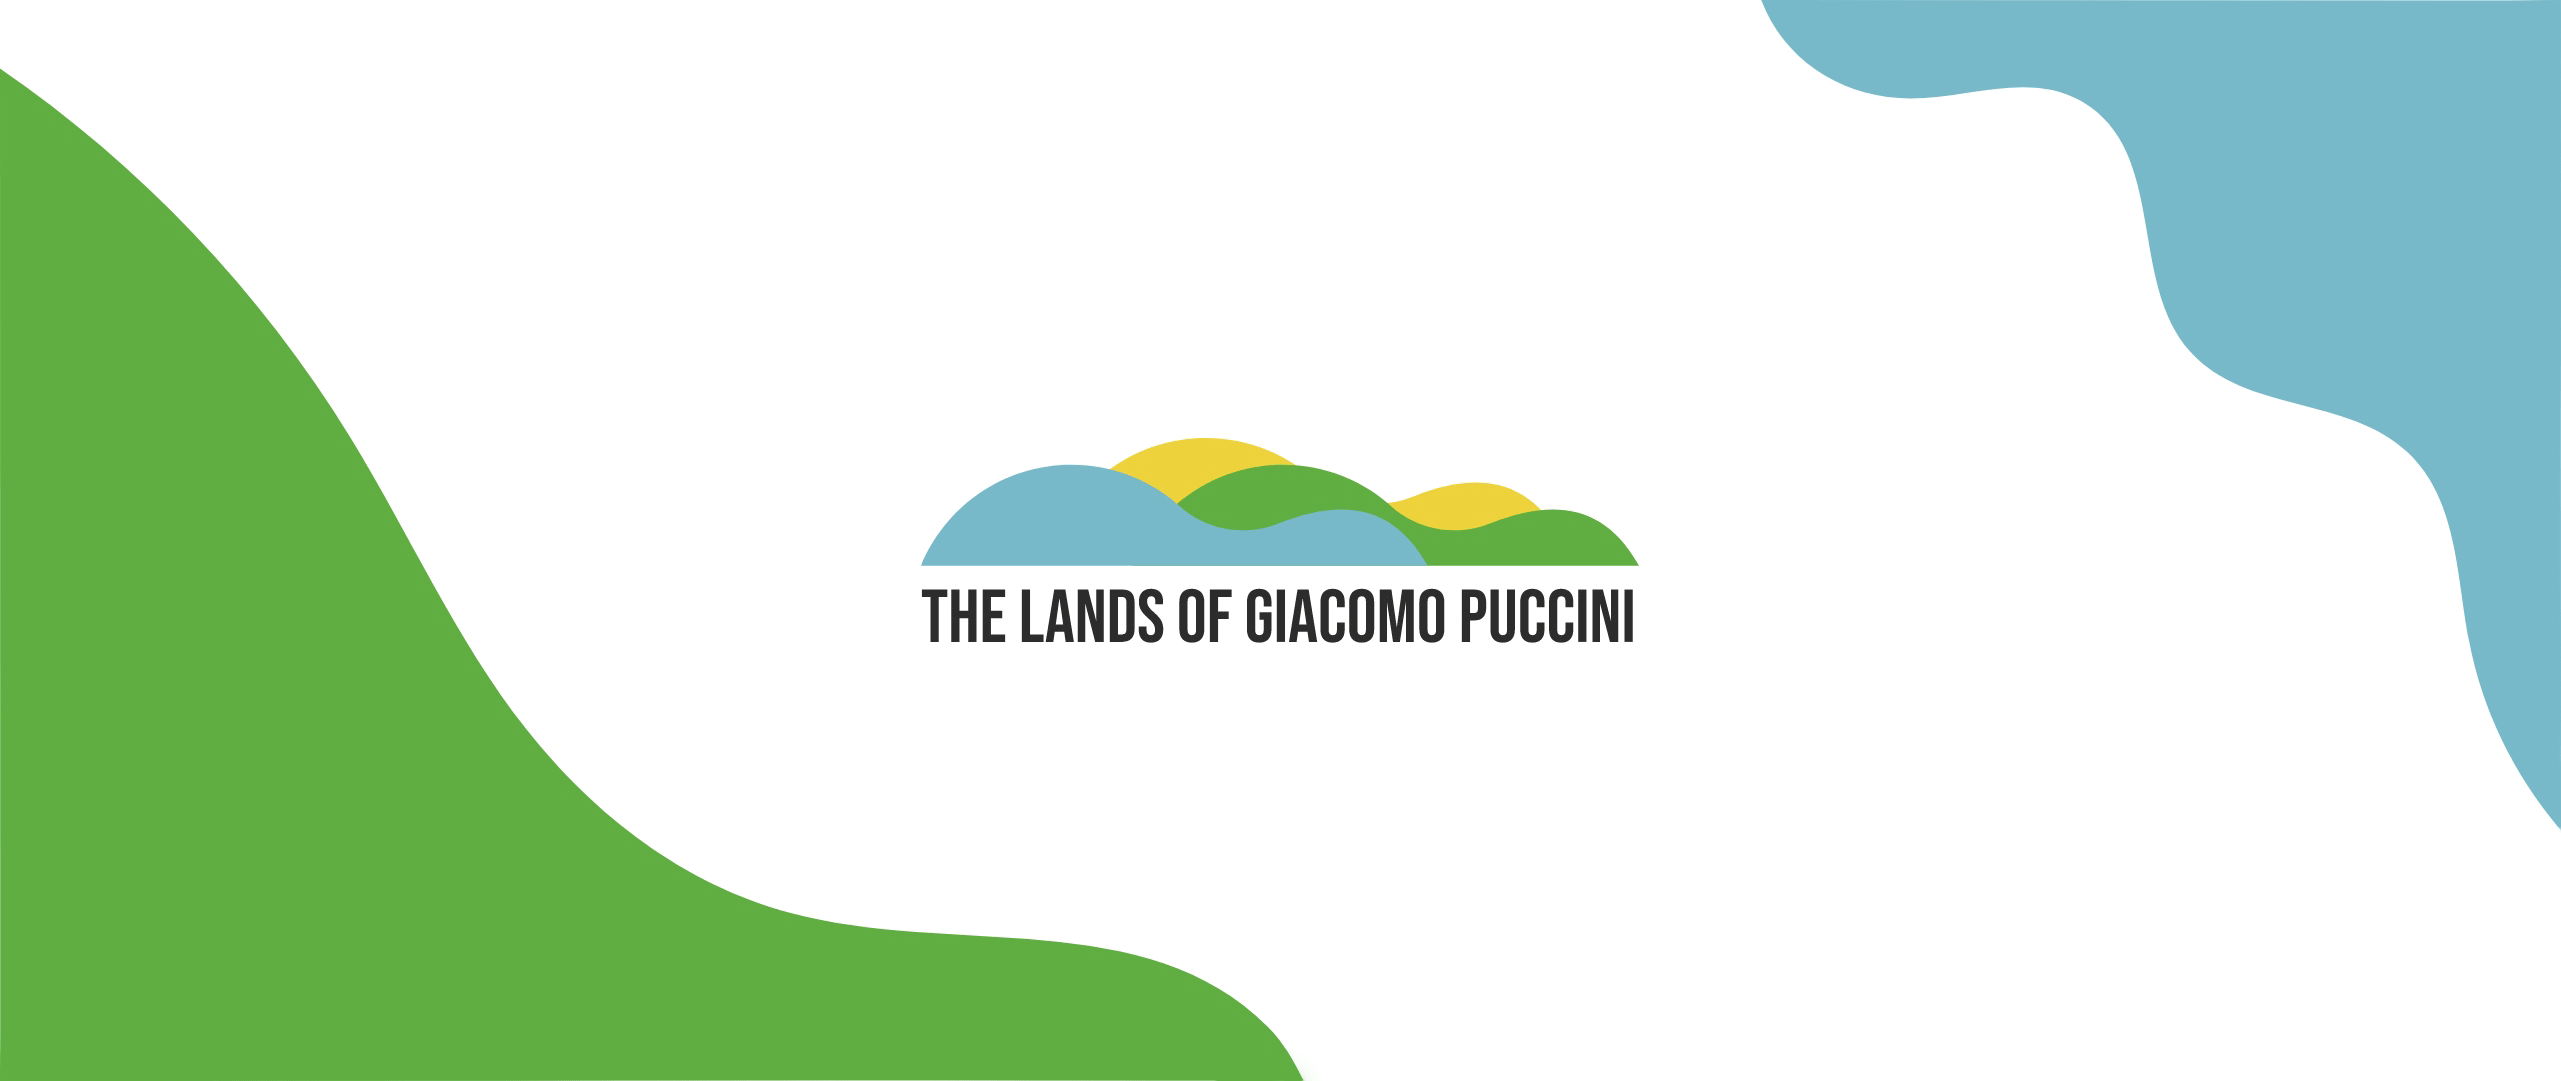 Gif che alterna decorazioni agli angoli dell'immagine mentre permane il logo di The Lands of Puccini.